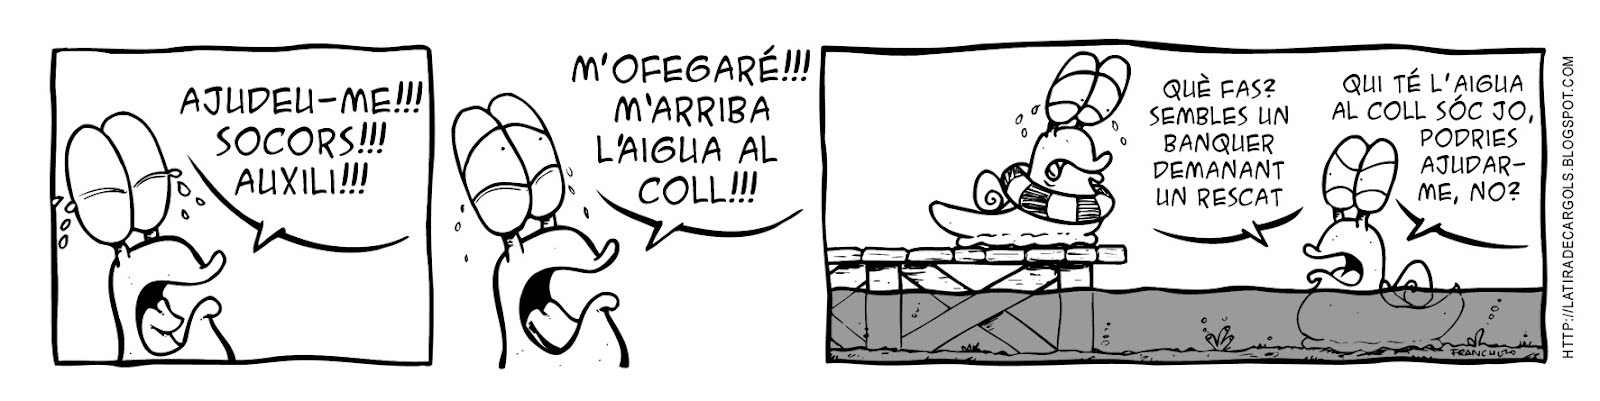 Tira comica 127 del webcomic Cargols del dibuixant Franchu de Barcelona